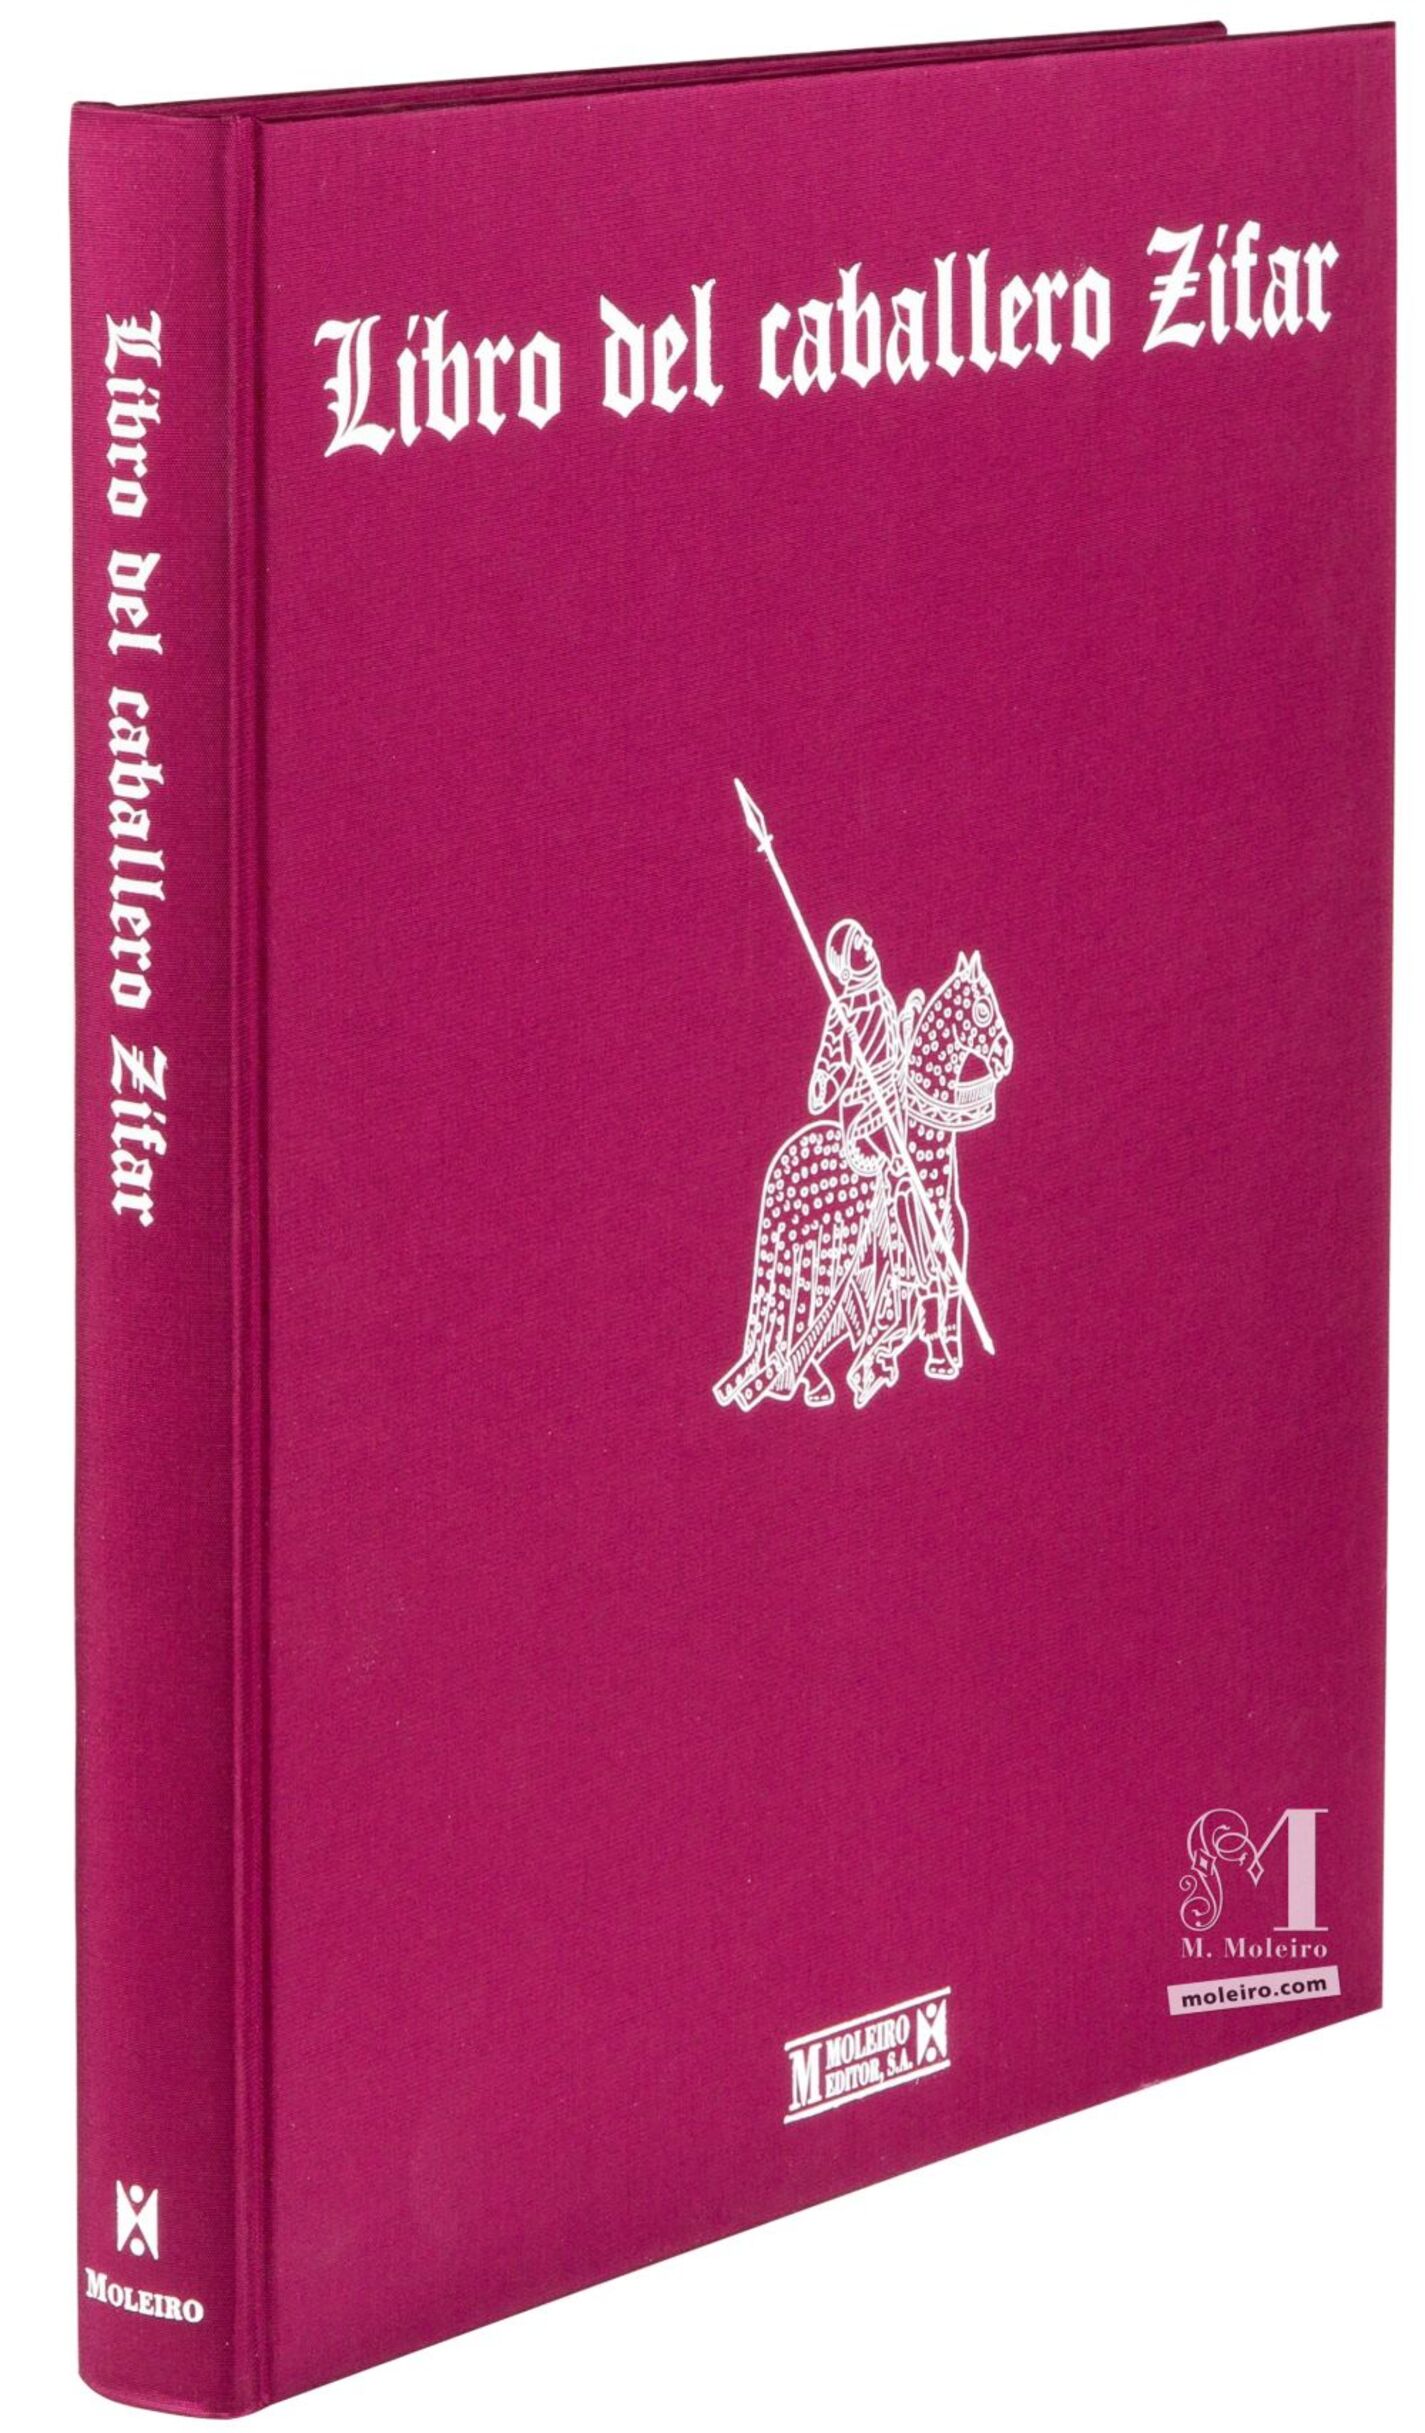 Detalle de la encuadernación en tela: portada y lomo del libro de arte Libro del Caballero Zifar